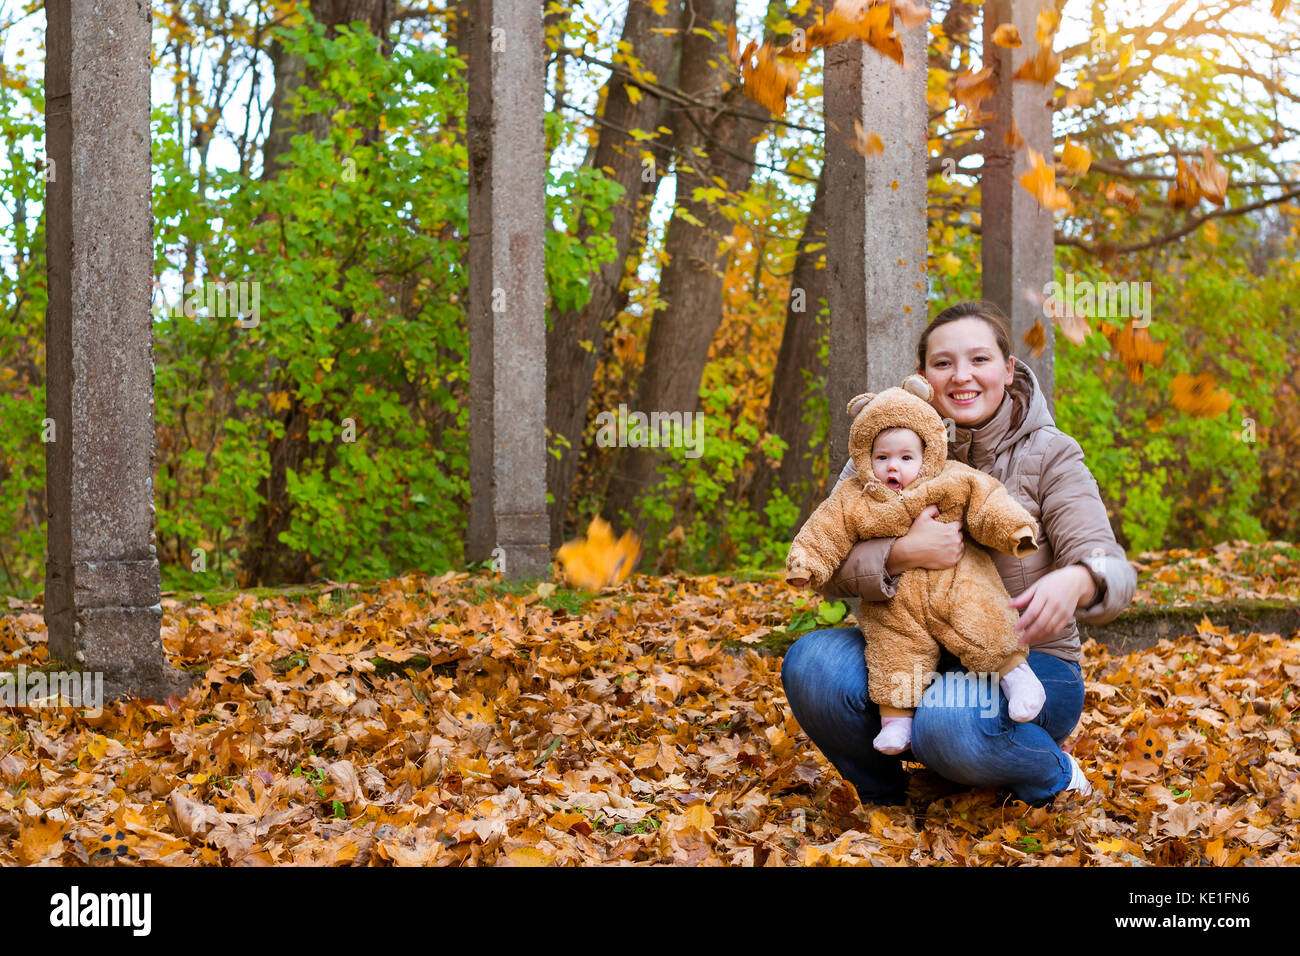 Femme avec bébé dans les bras, posant sur fond d'automne parc. enfant vêtu de teddy-bear stylisé chaud costume, s'amusant sur les bras de la mère de famille. w Banque D'Images